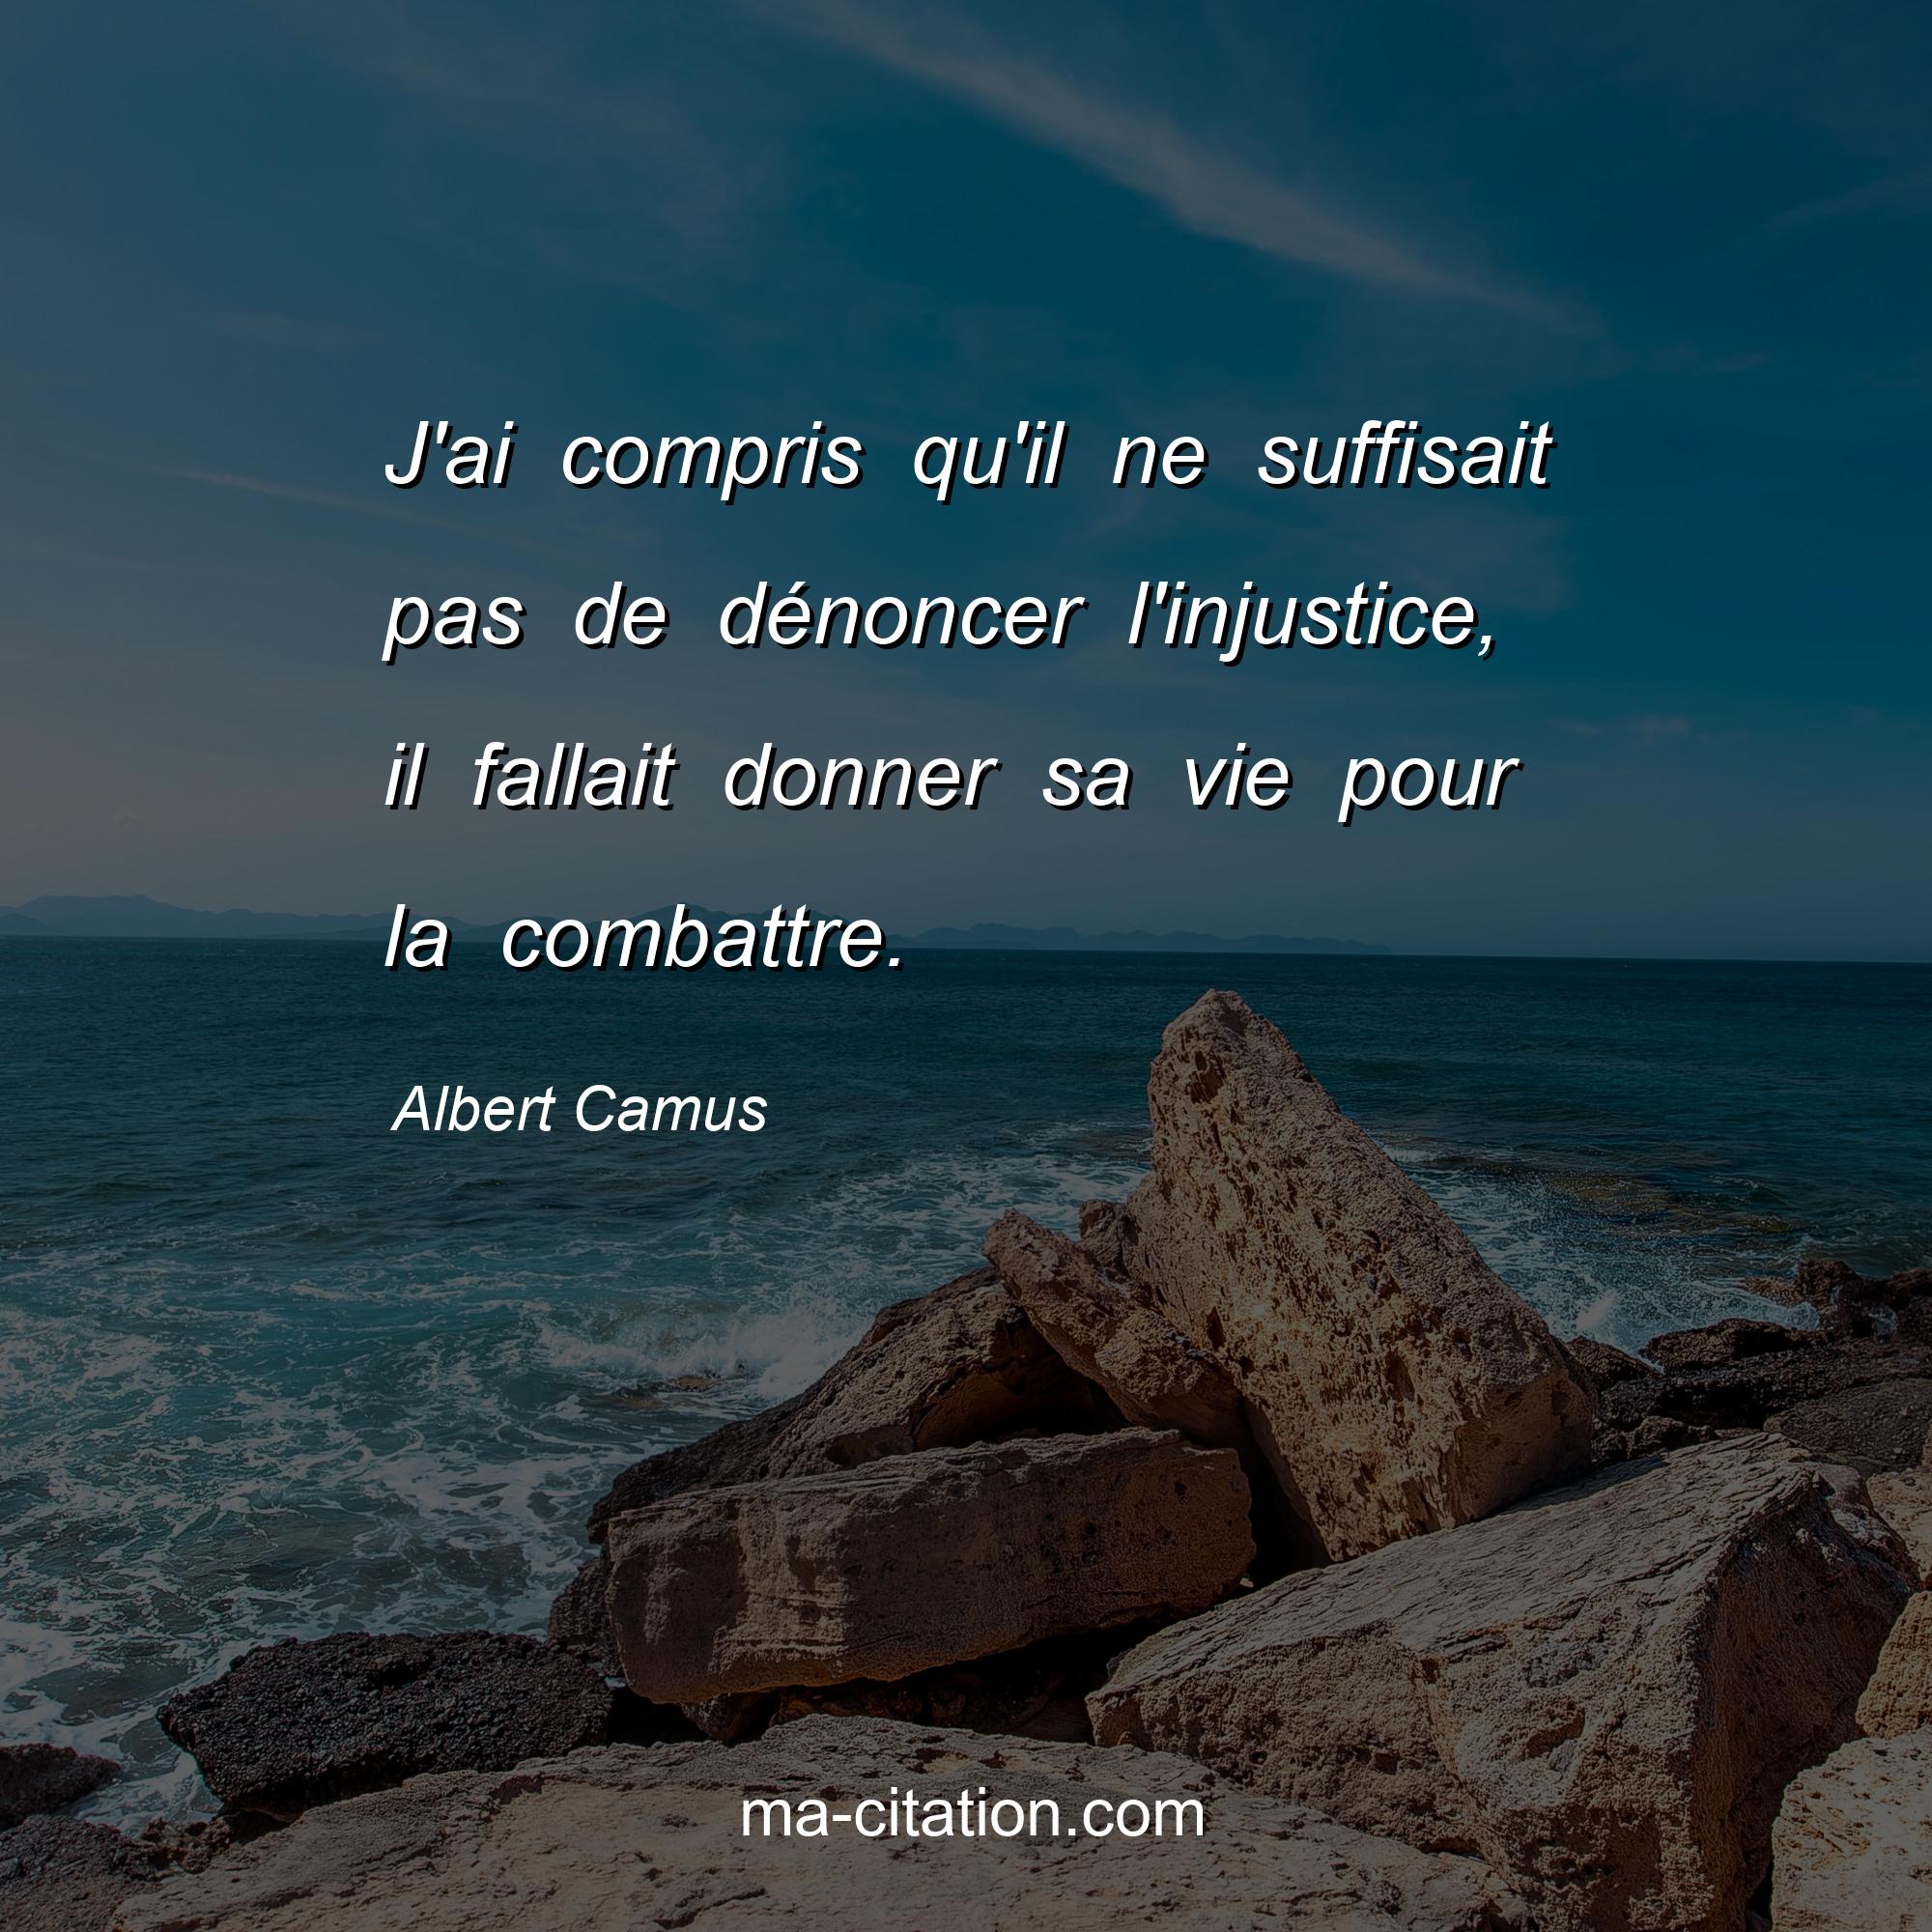 Albert Camus : J'ai compris qu'il ne suffisait pas de dénoncer l'injustice, il fallait donner sa vie pour la combattre.